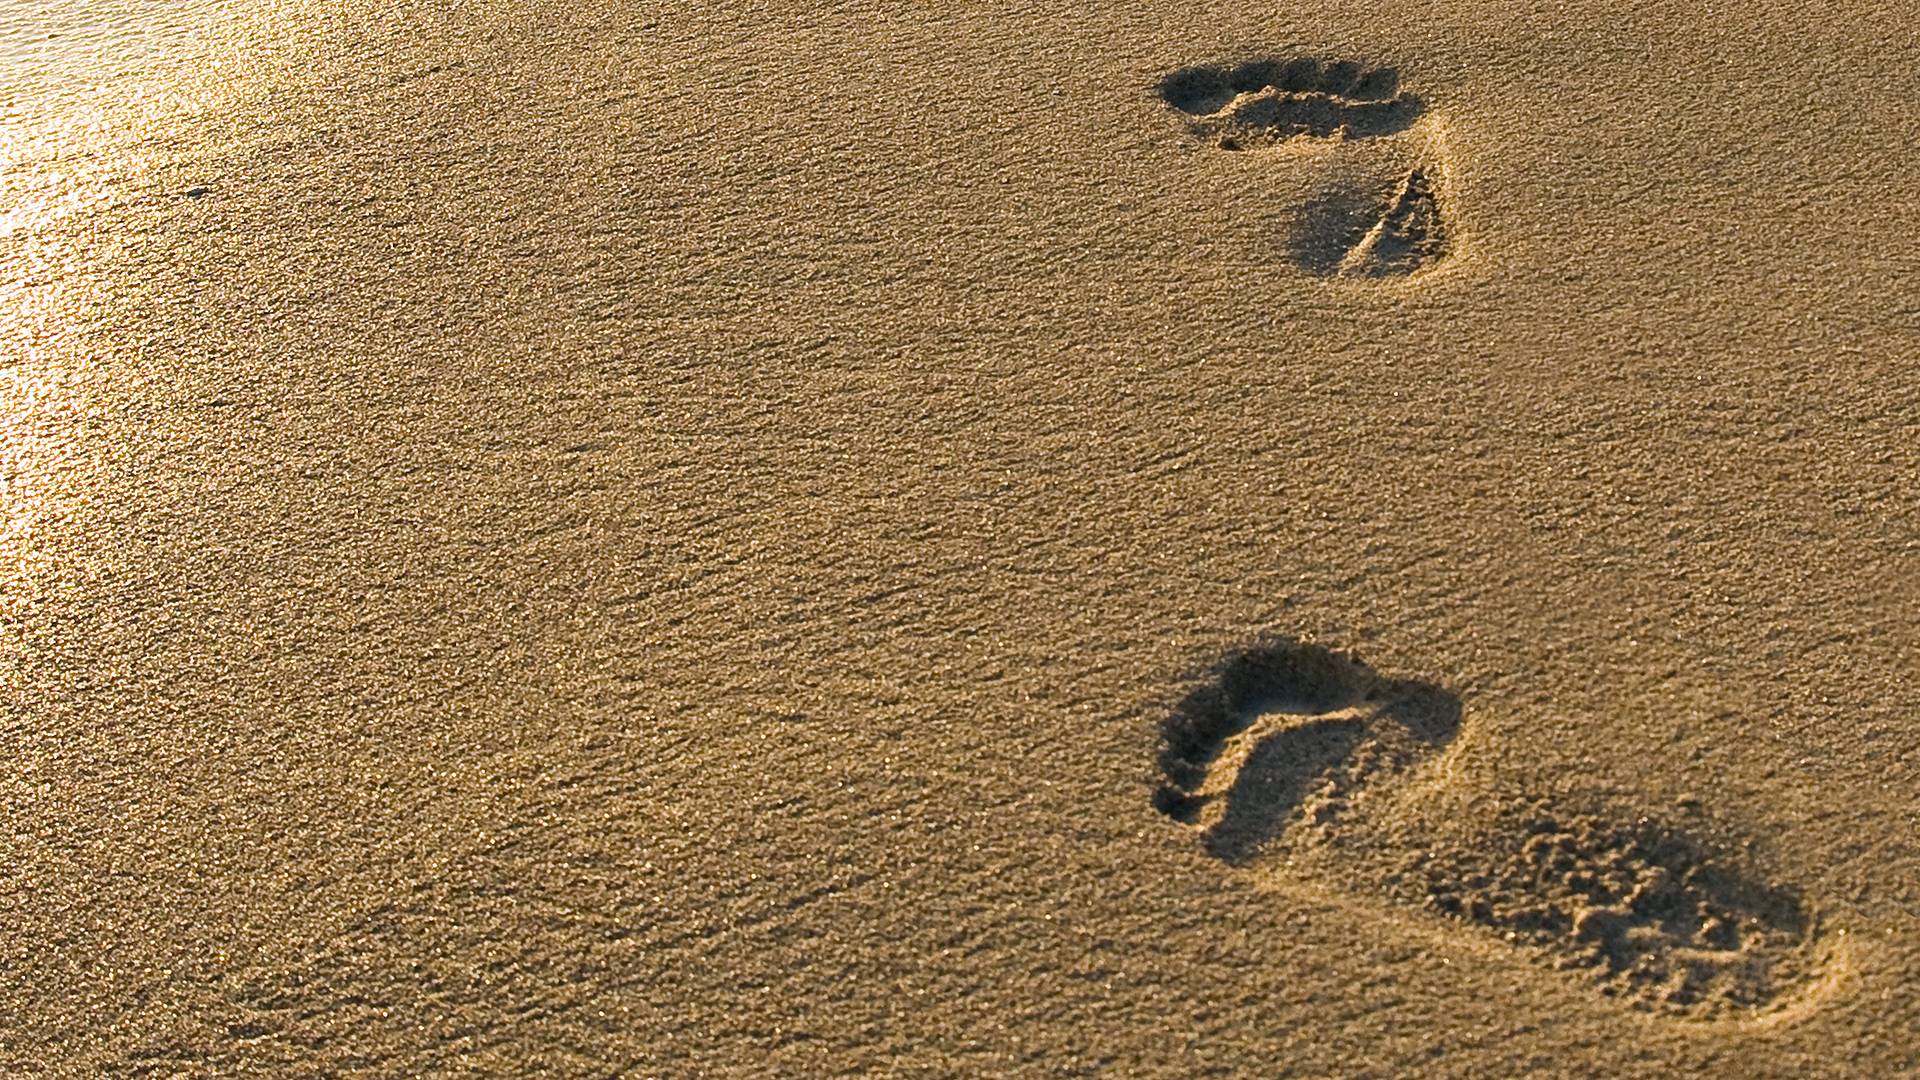 Footprints In Sand Wallpaper Desktop #9096 Wallpaper | High ...